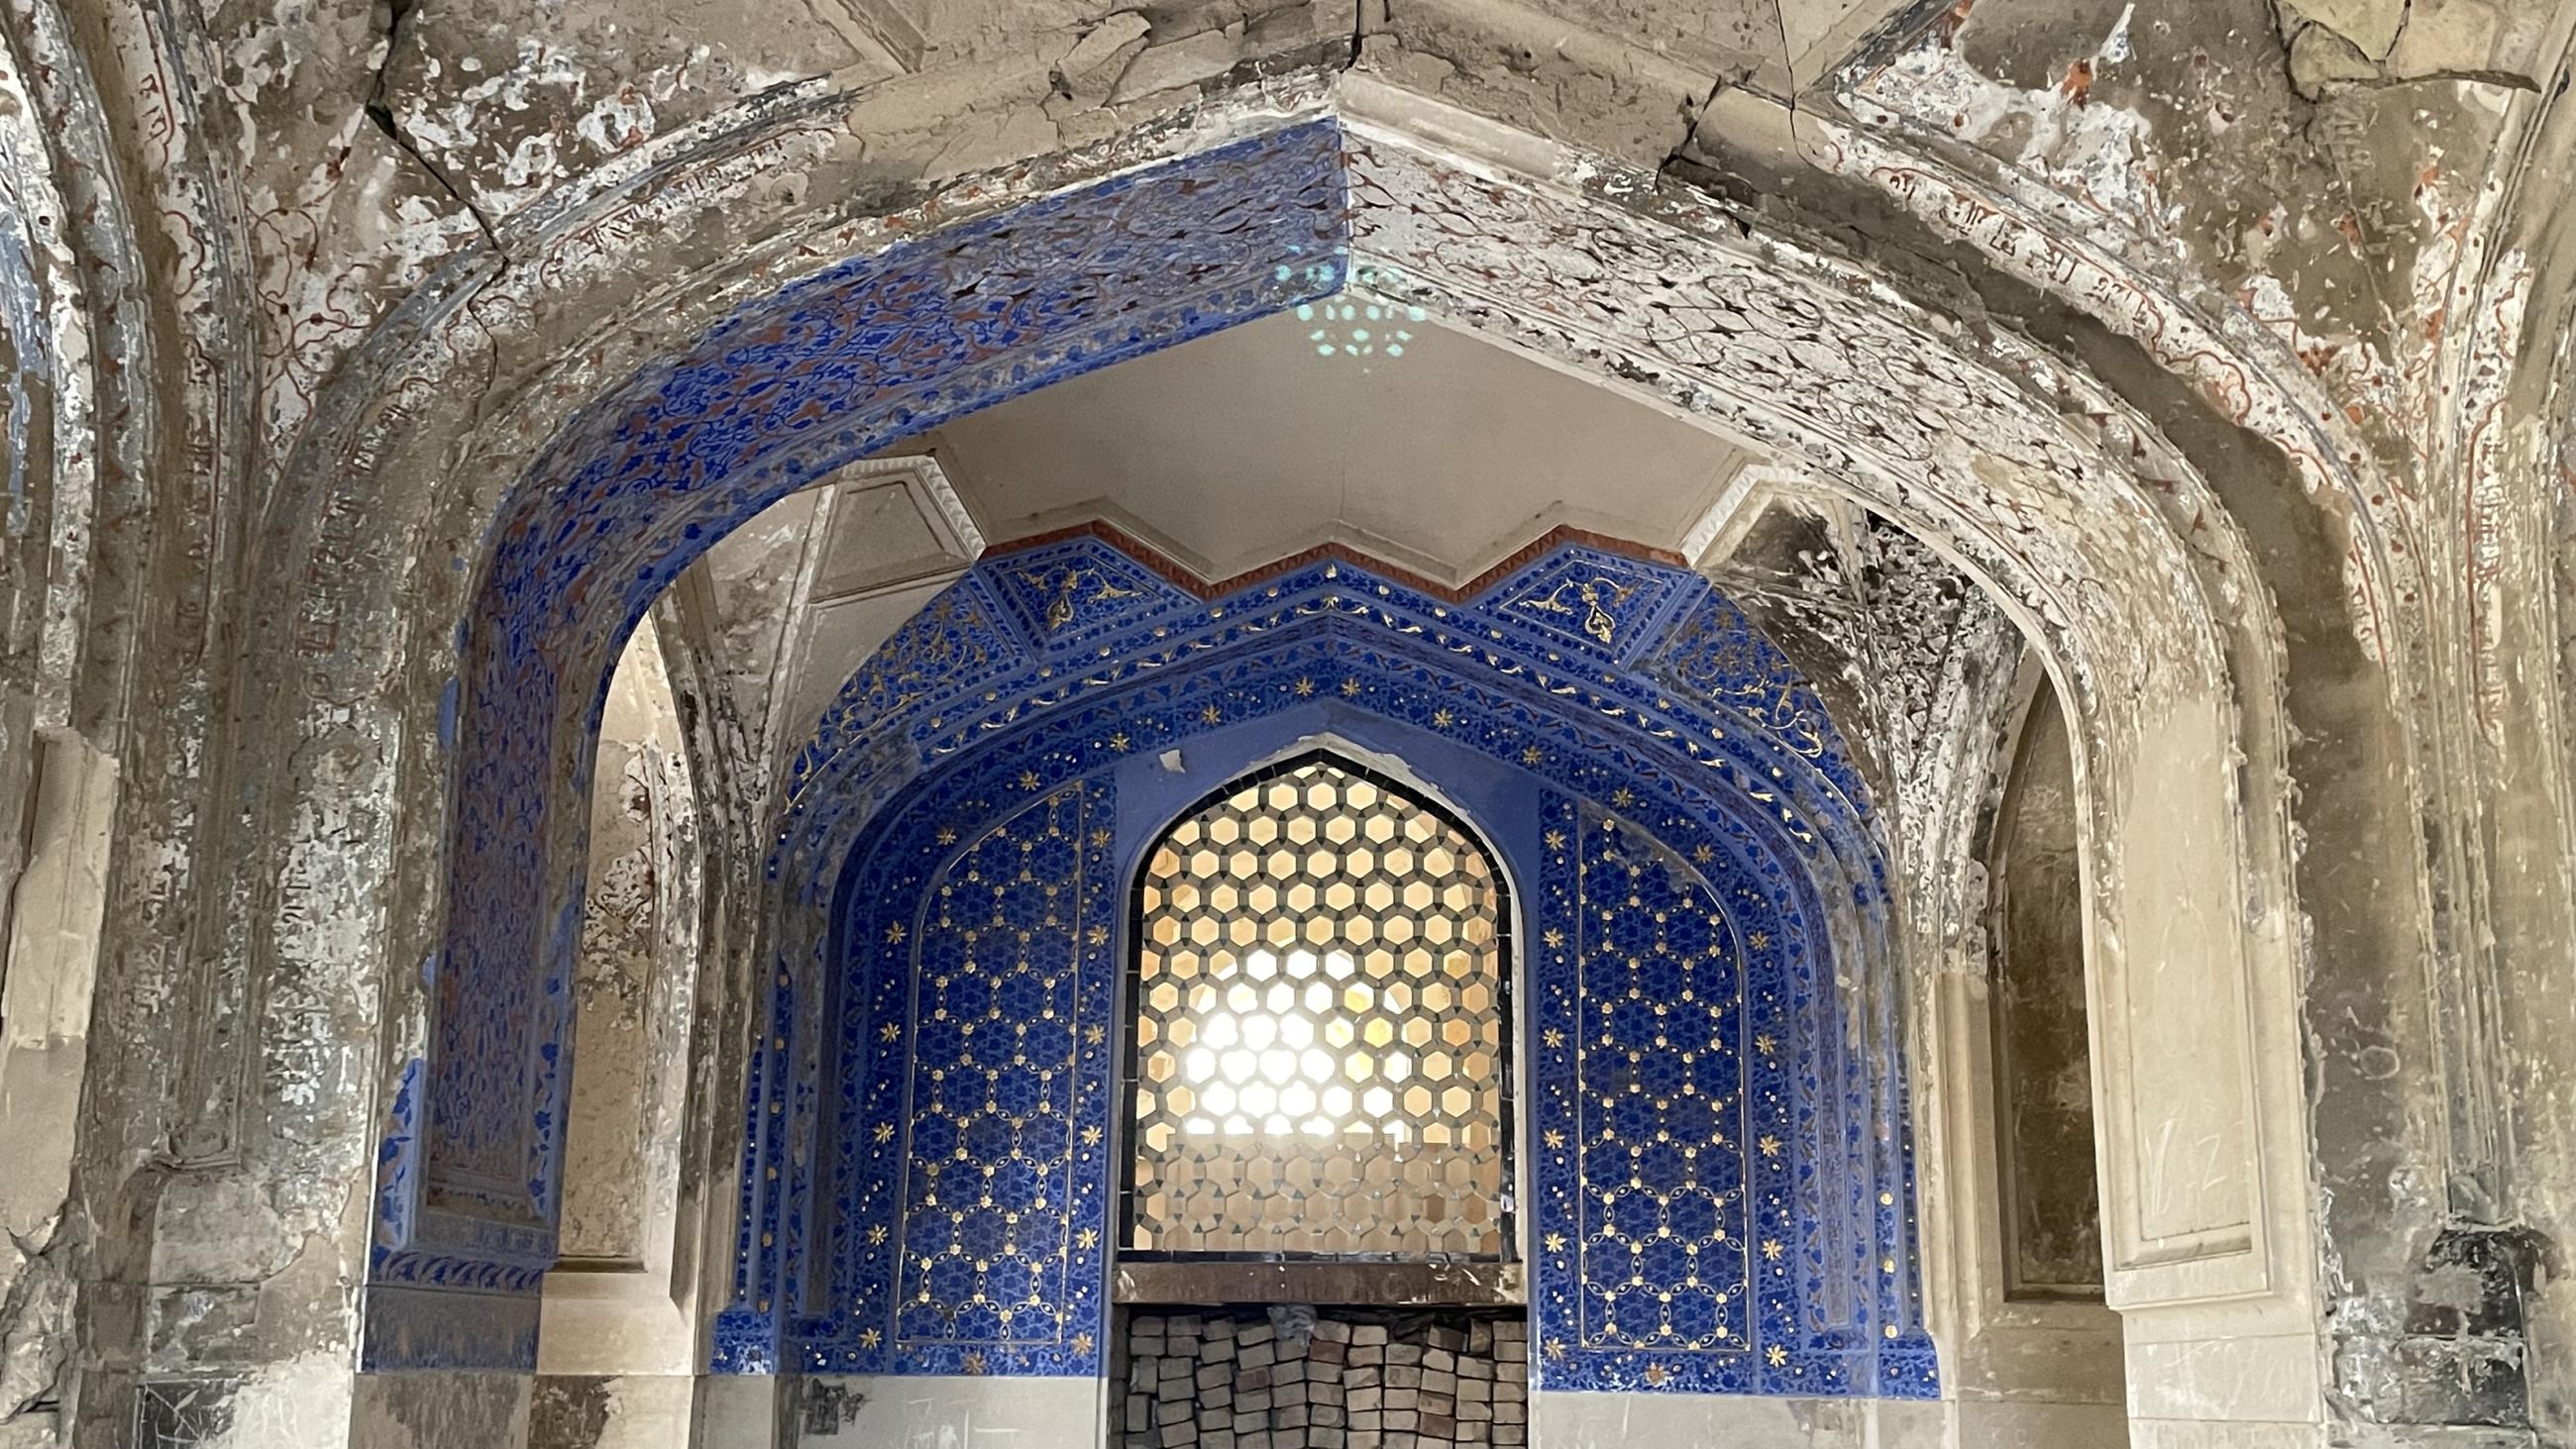  Historische und moderne Architekturdekoration in Samarkand, Usbekistan